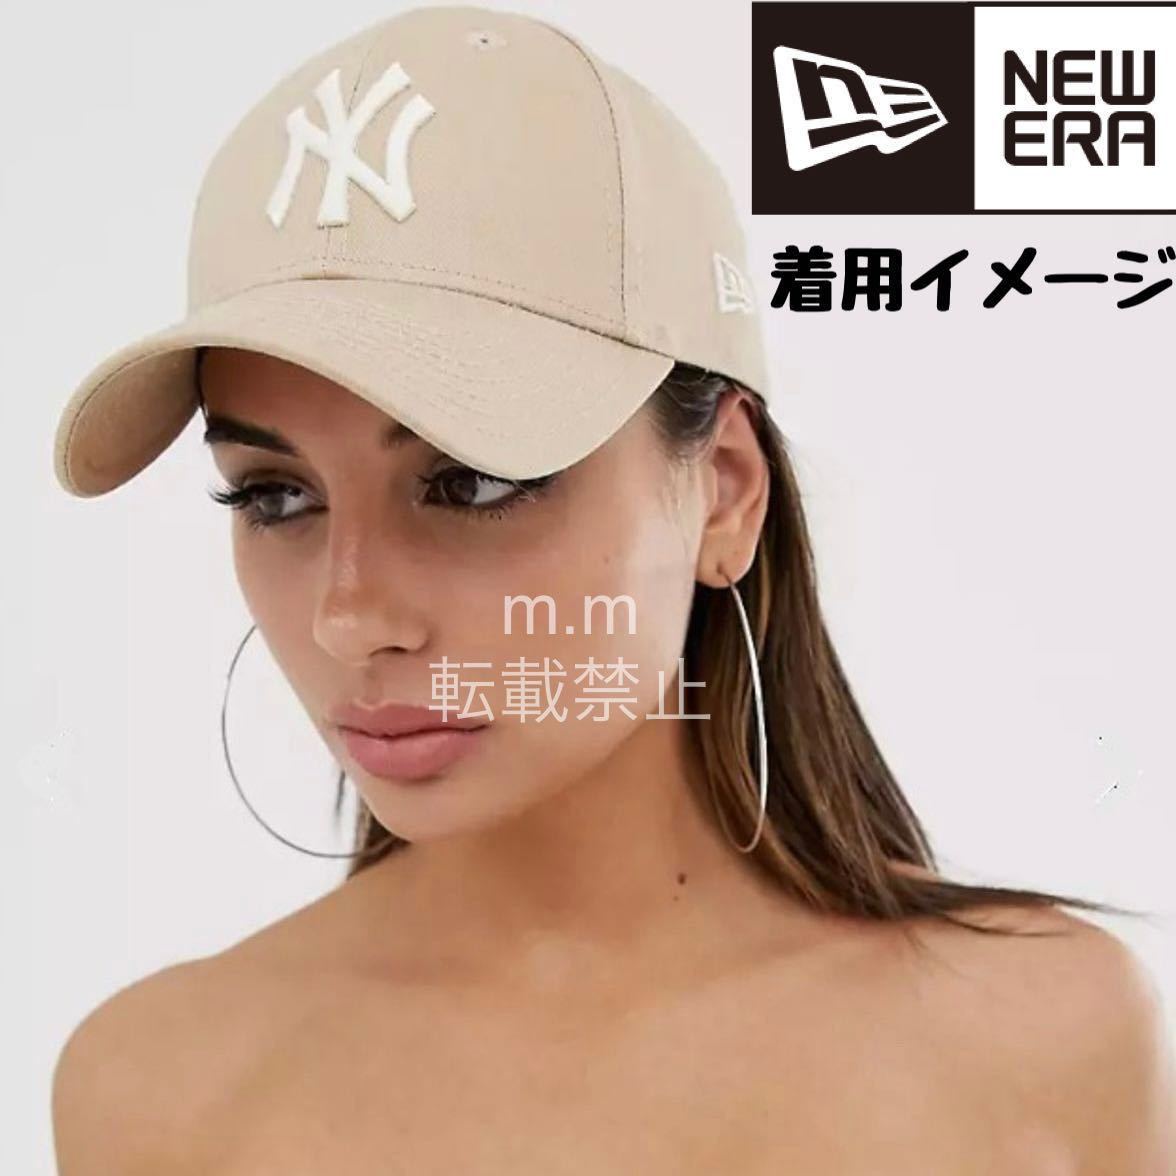 NEW ERA 9FORTY ニューエラ ニューヨークヤンキース メジャー キャップ 海外正規品 帽子 モカベージュ ホワイト メンズ レディース_画像2